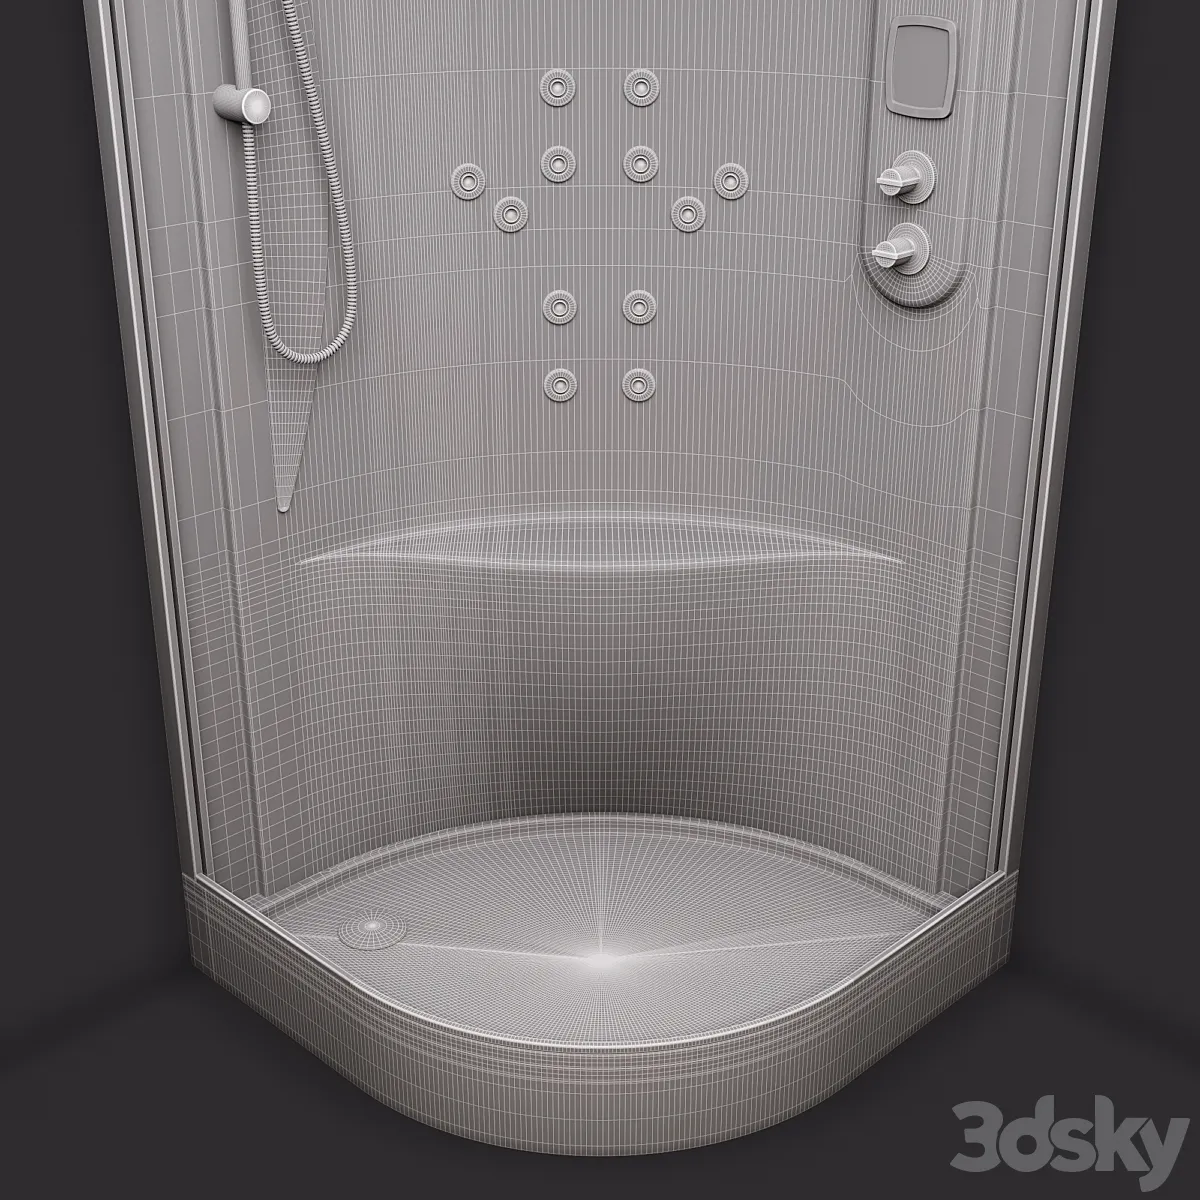 مدل سه بعدی دوش حمام 14 - 6